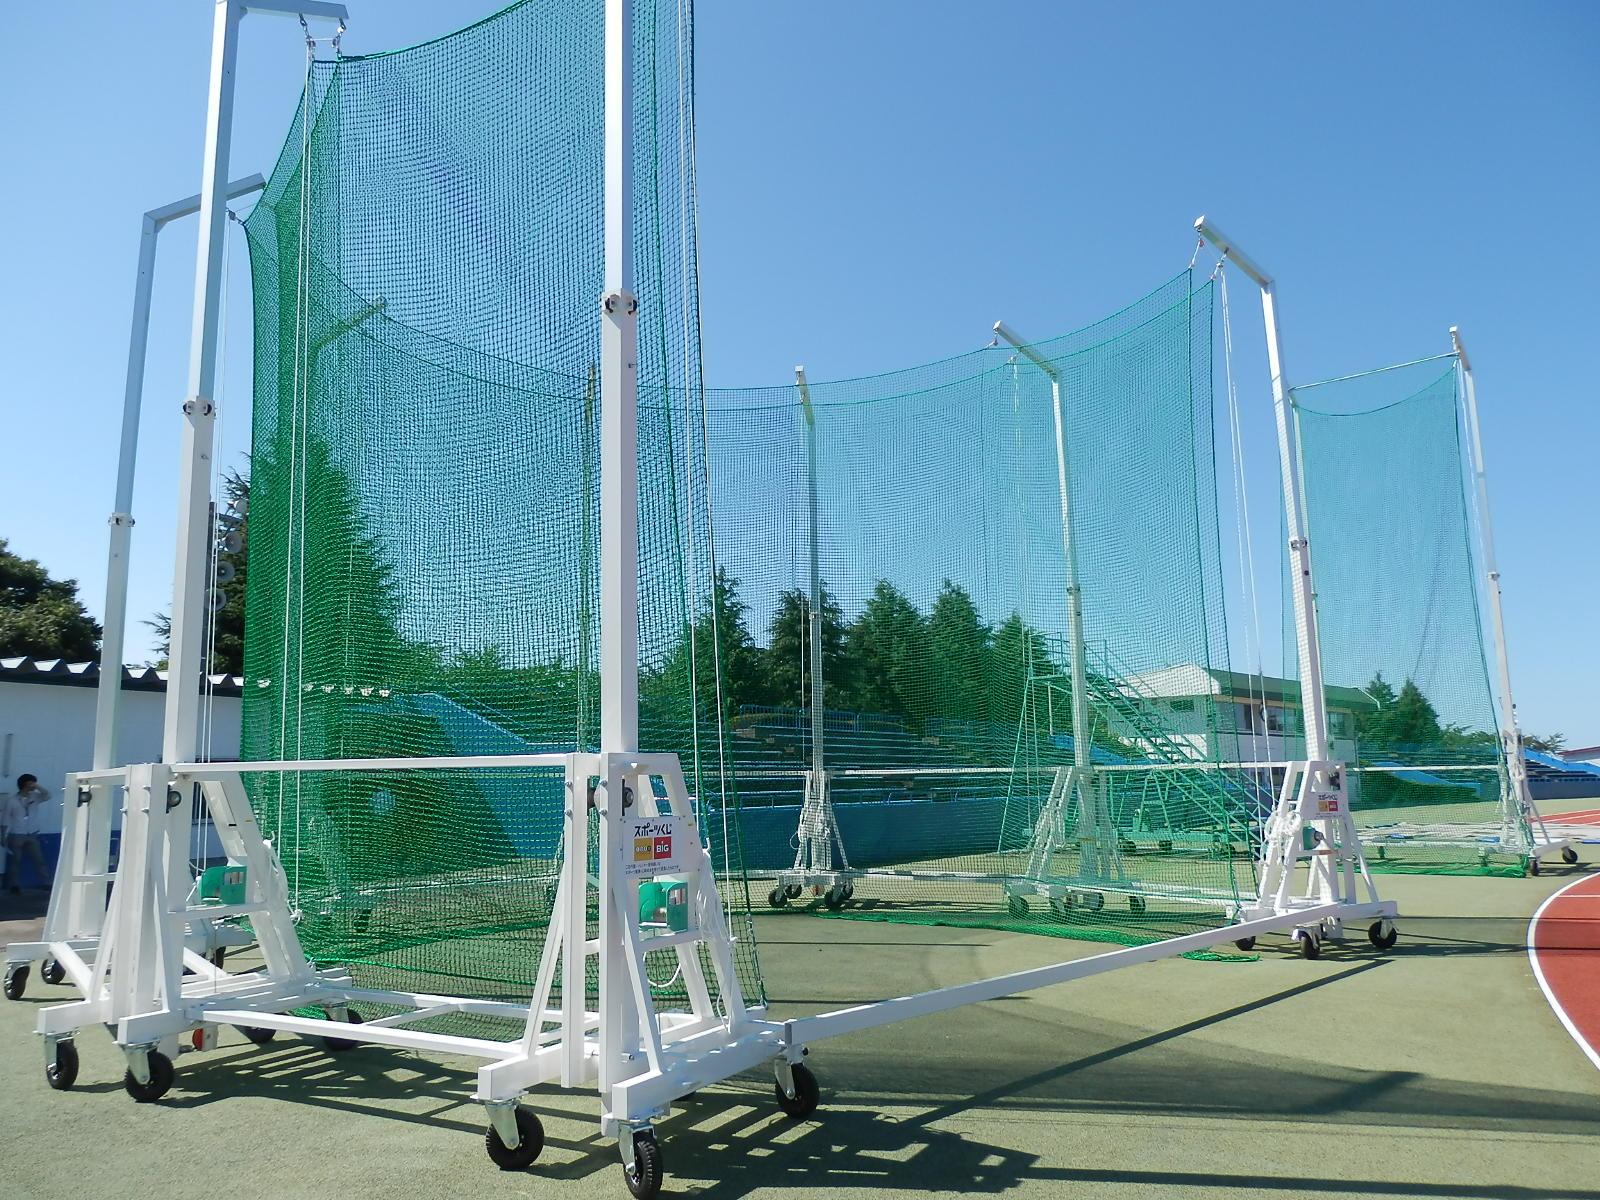 東運動公園陸上競技場に設置され緑色のネットが張られているた円盤・ハンマー投用囲いの外観の写真